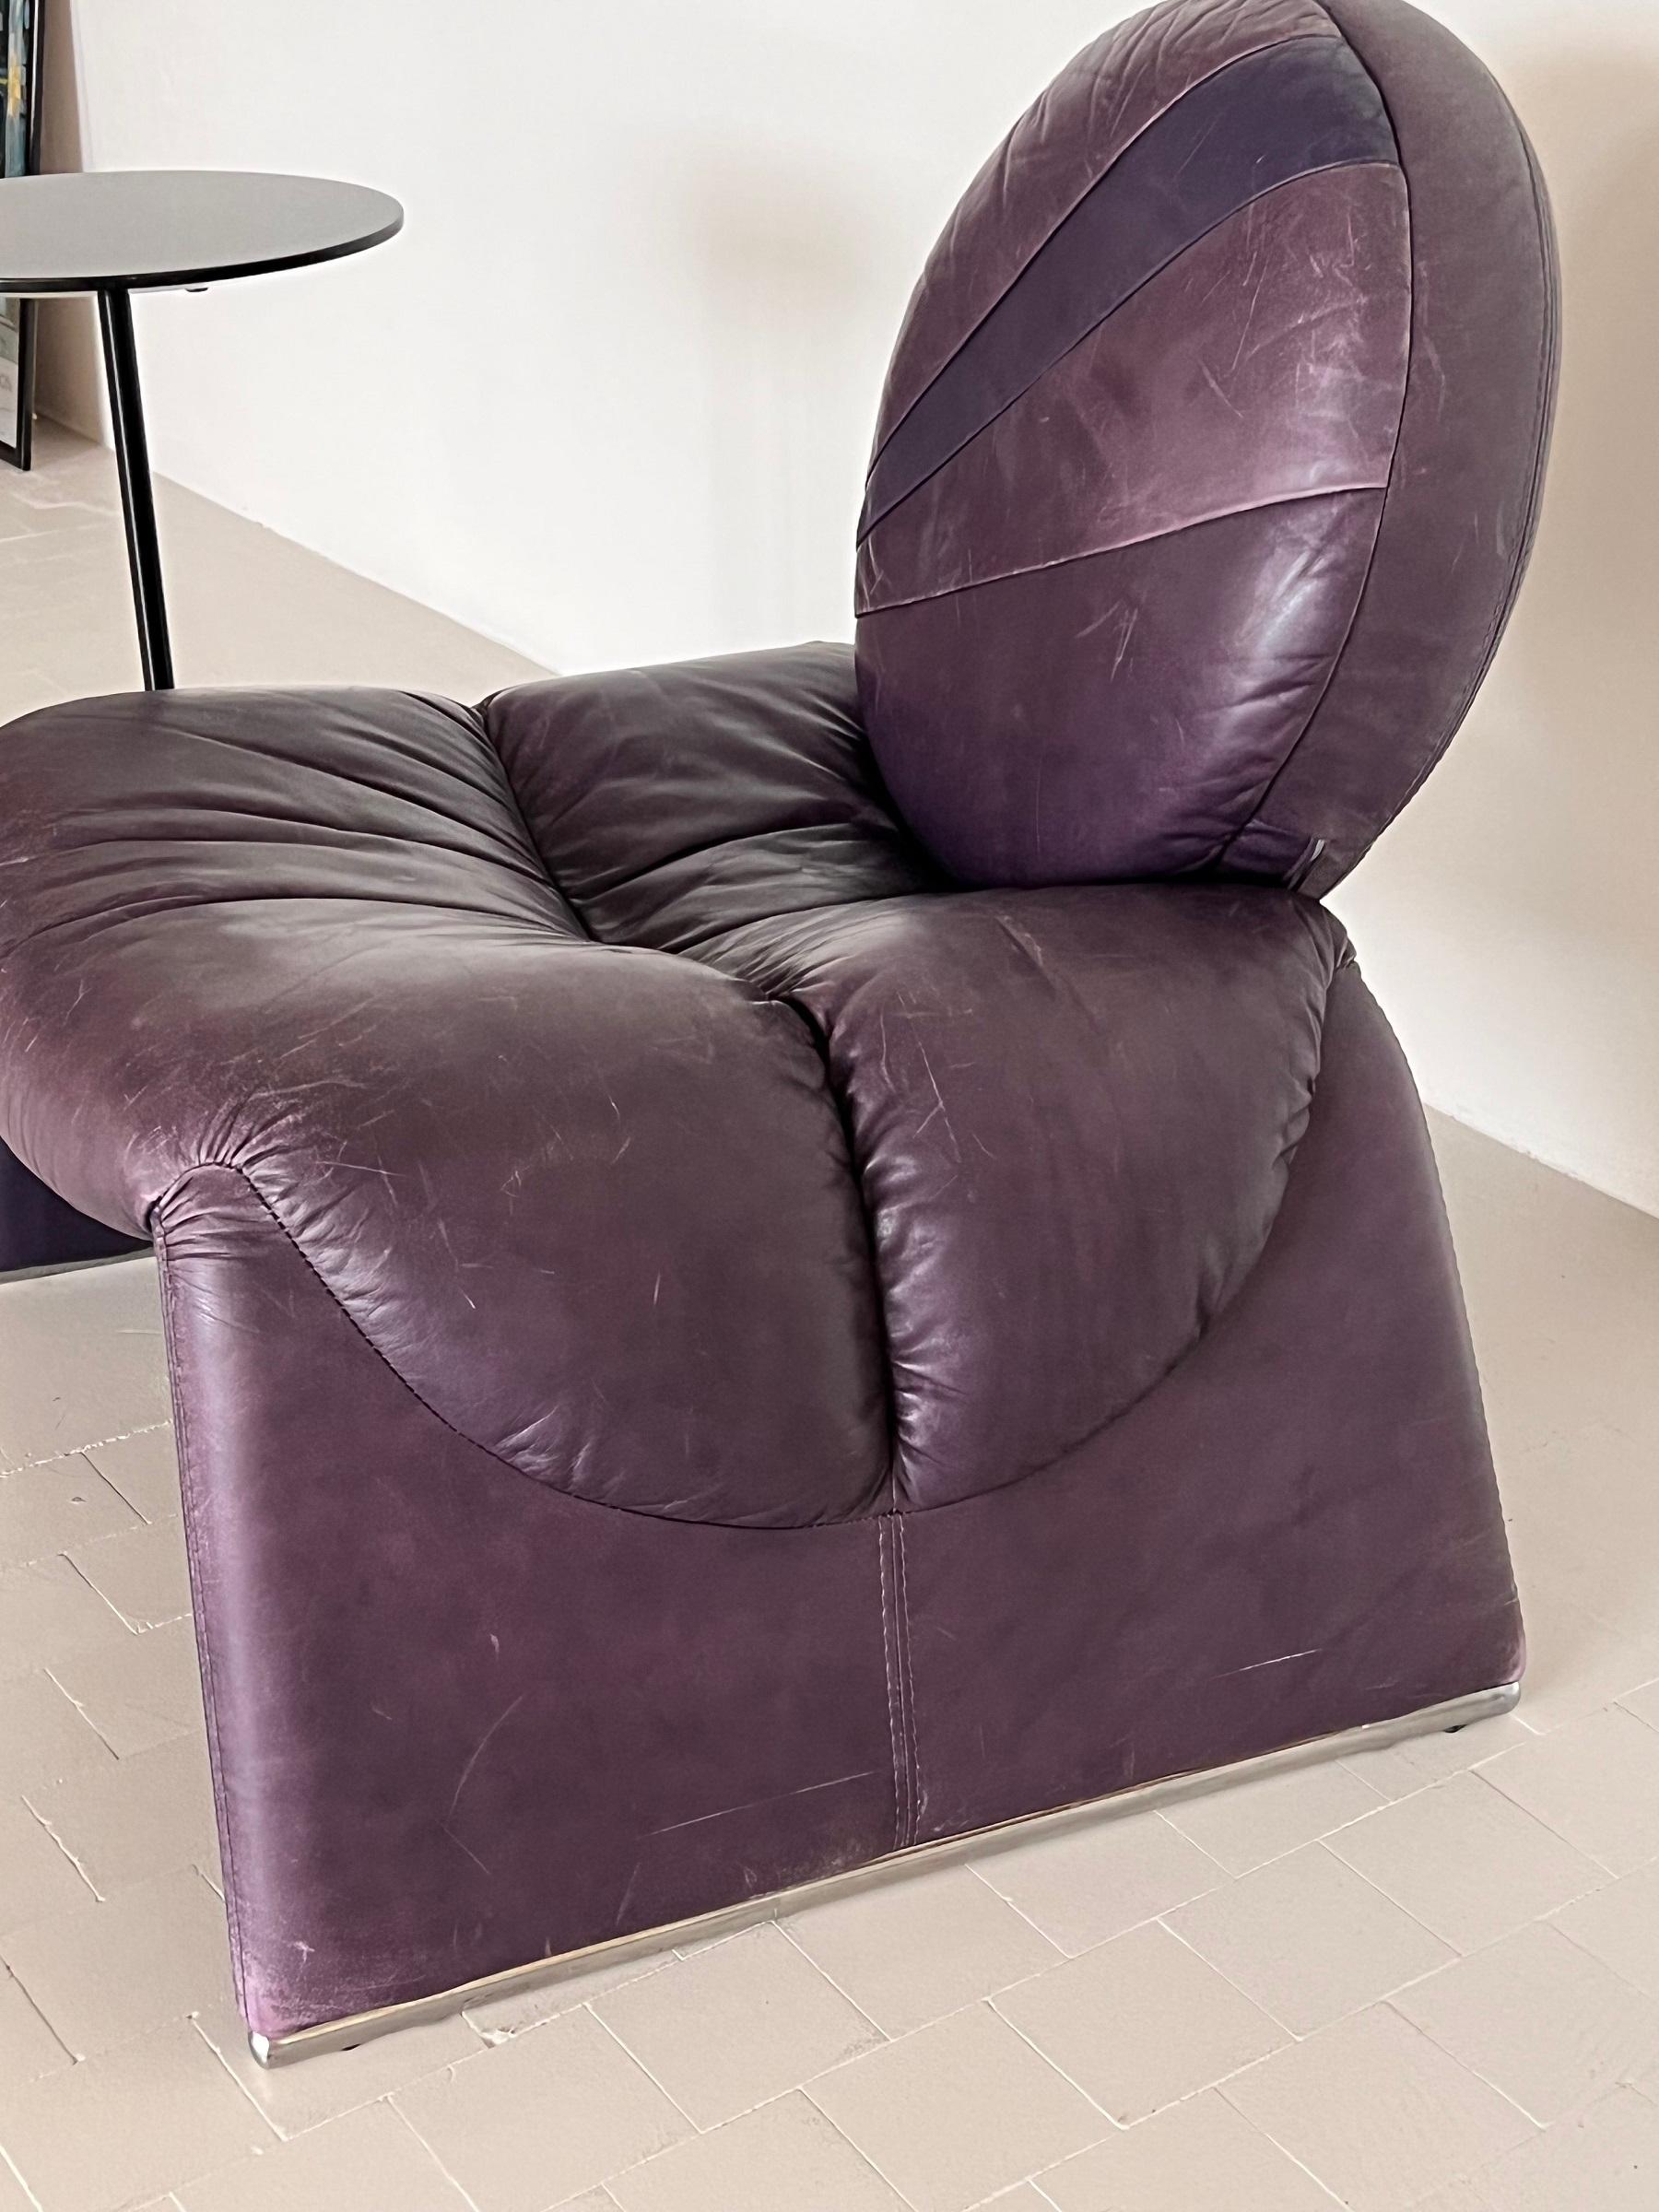 Vittorio Introini Lounge Chair P35 in Purple for Saporiti, 1980s For Sale 4